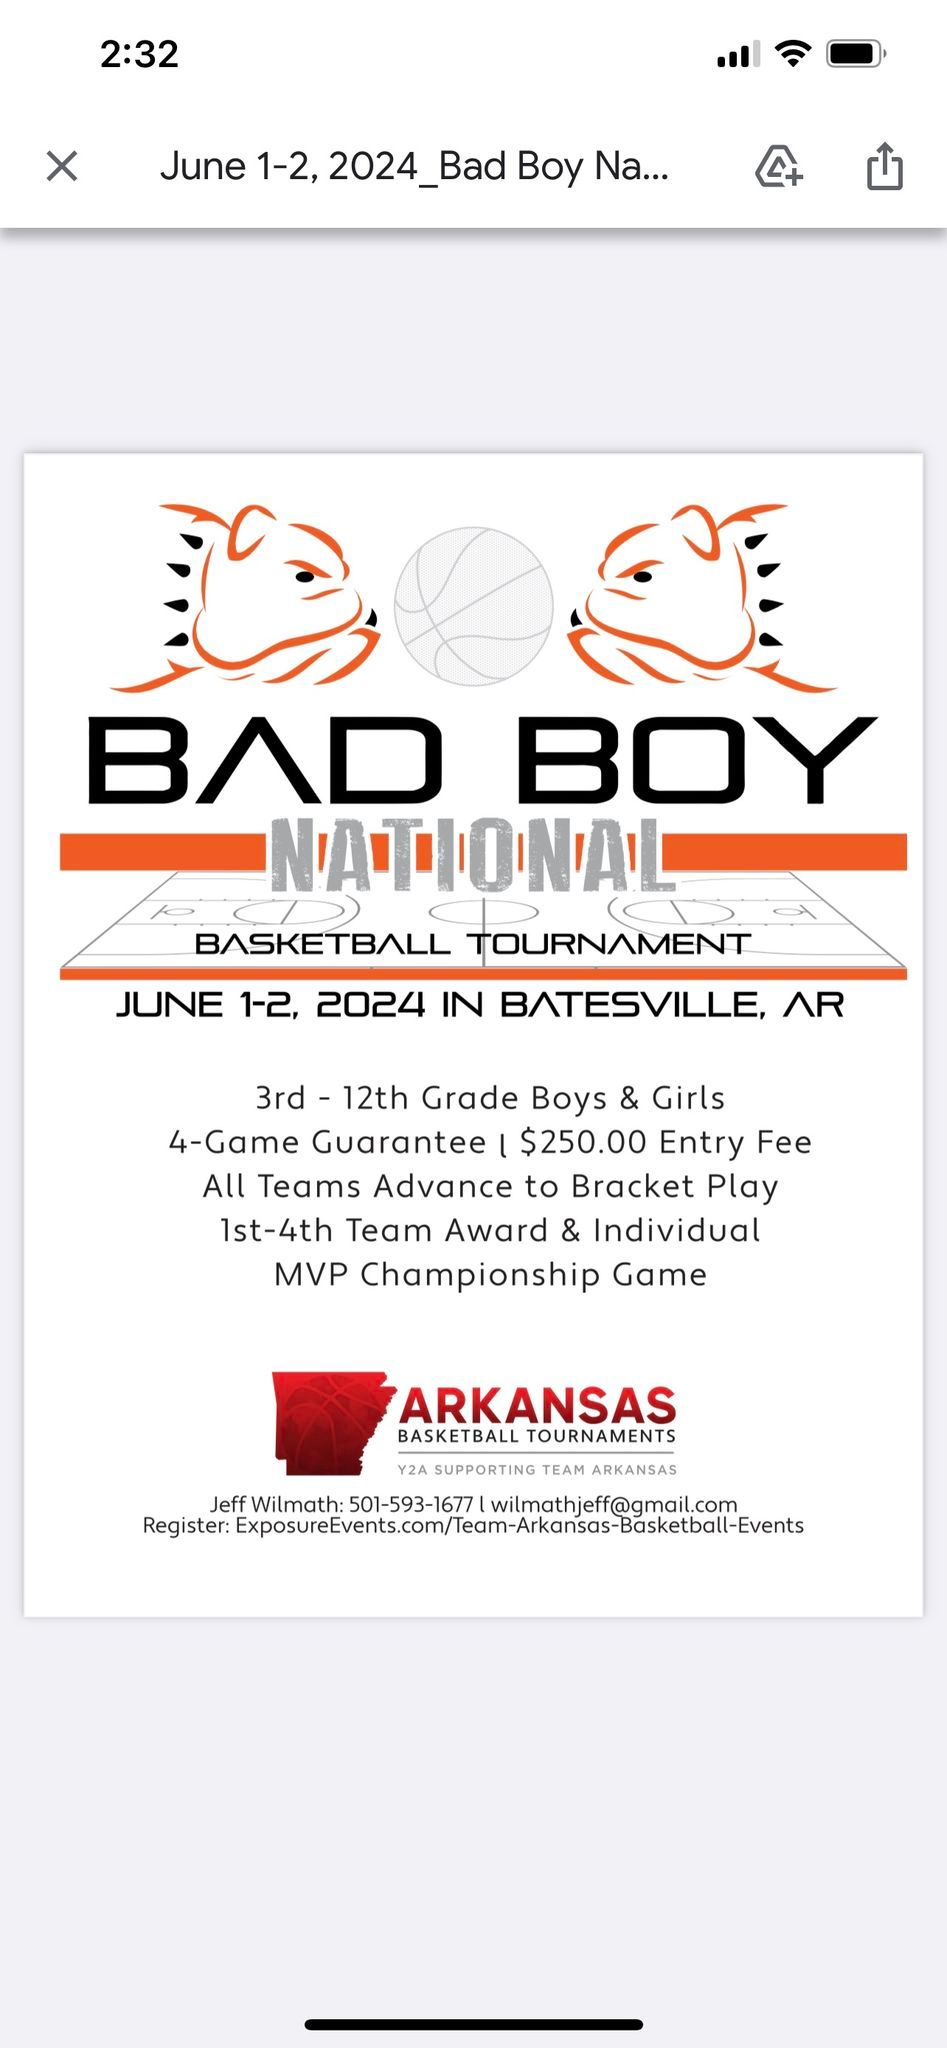 Bad Boy National Basketball Tournament 